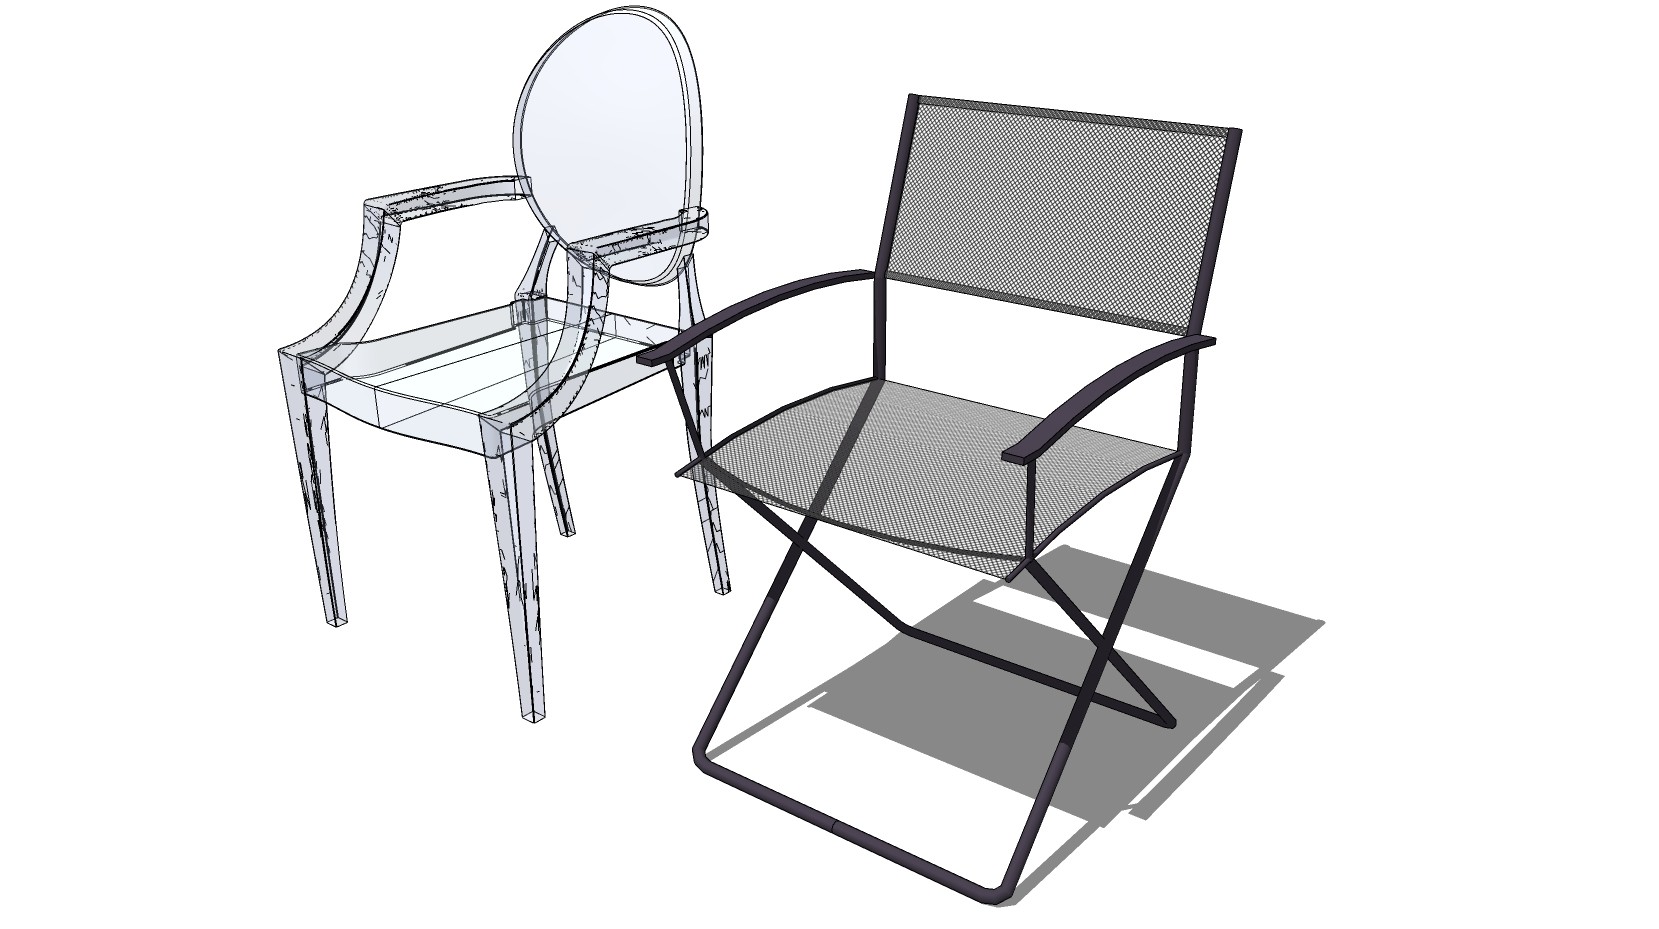 09北欧现代简欧式塑料透明休闲椅 su草图模型下载